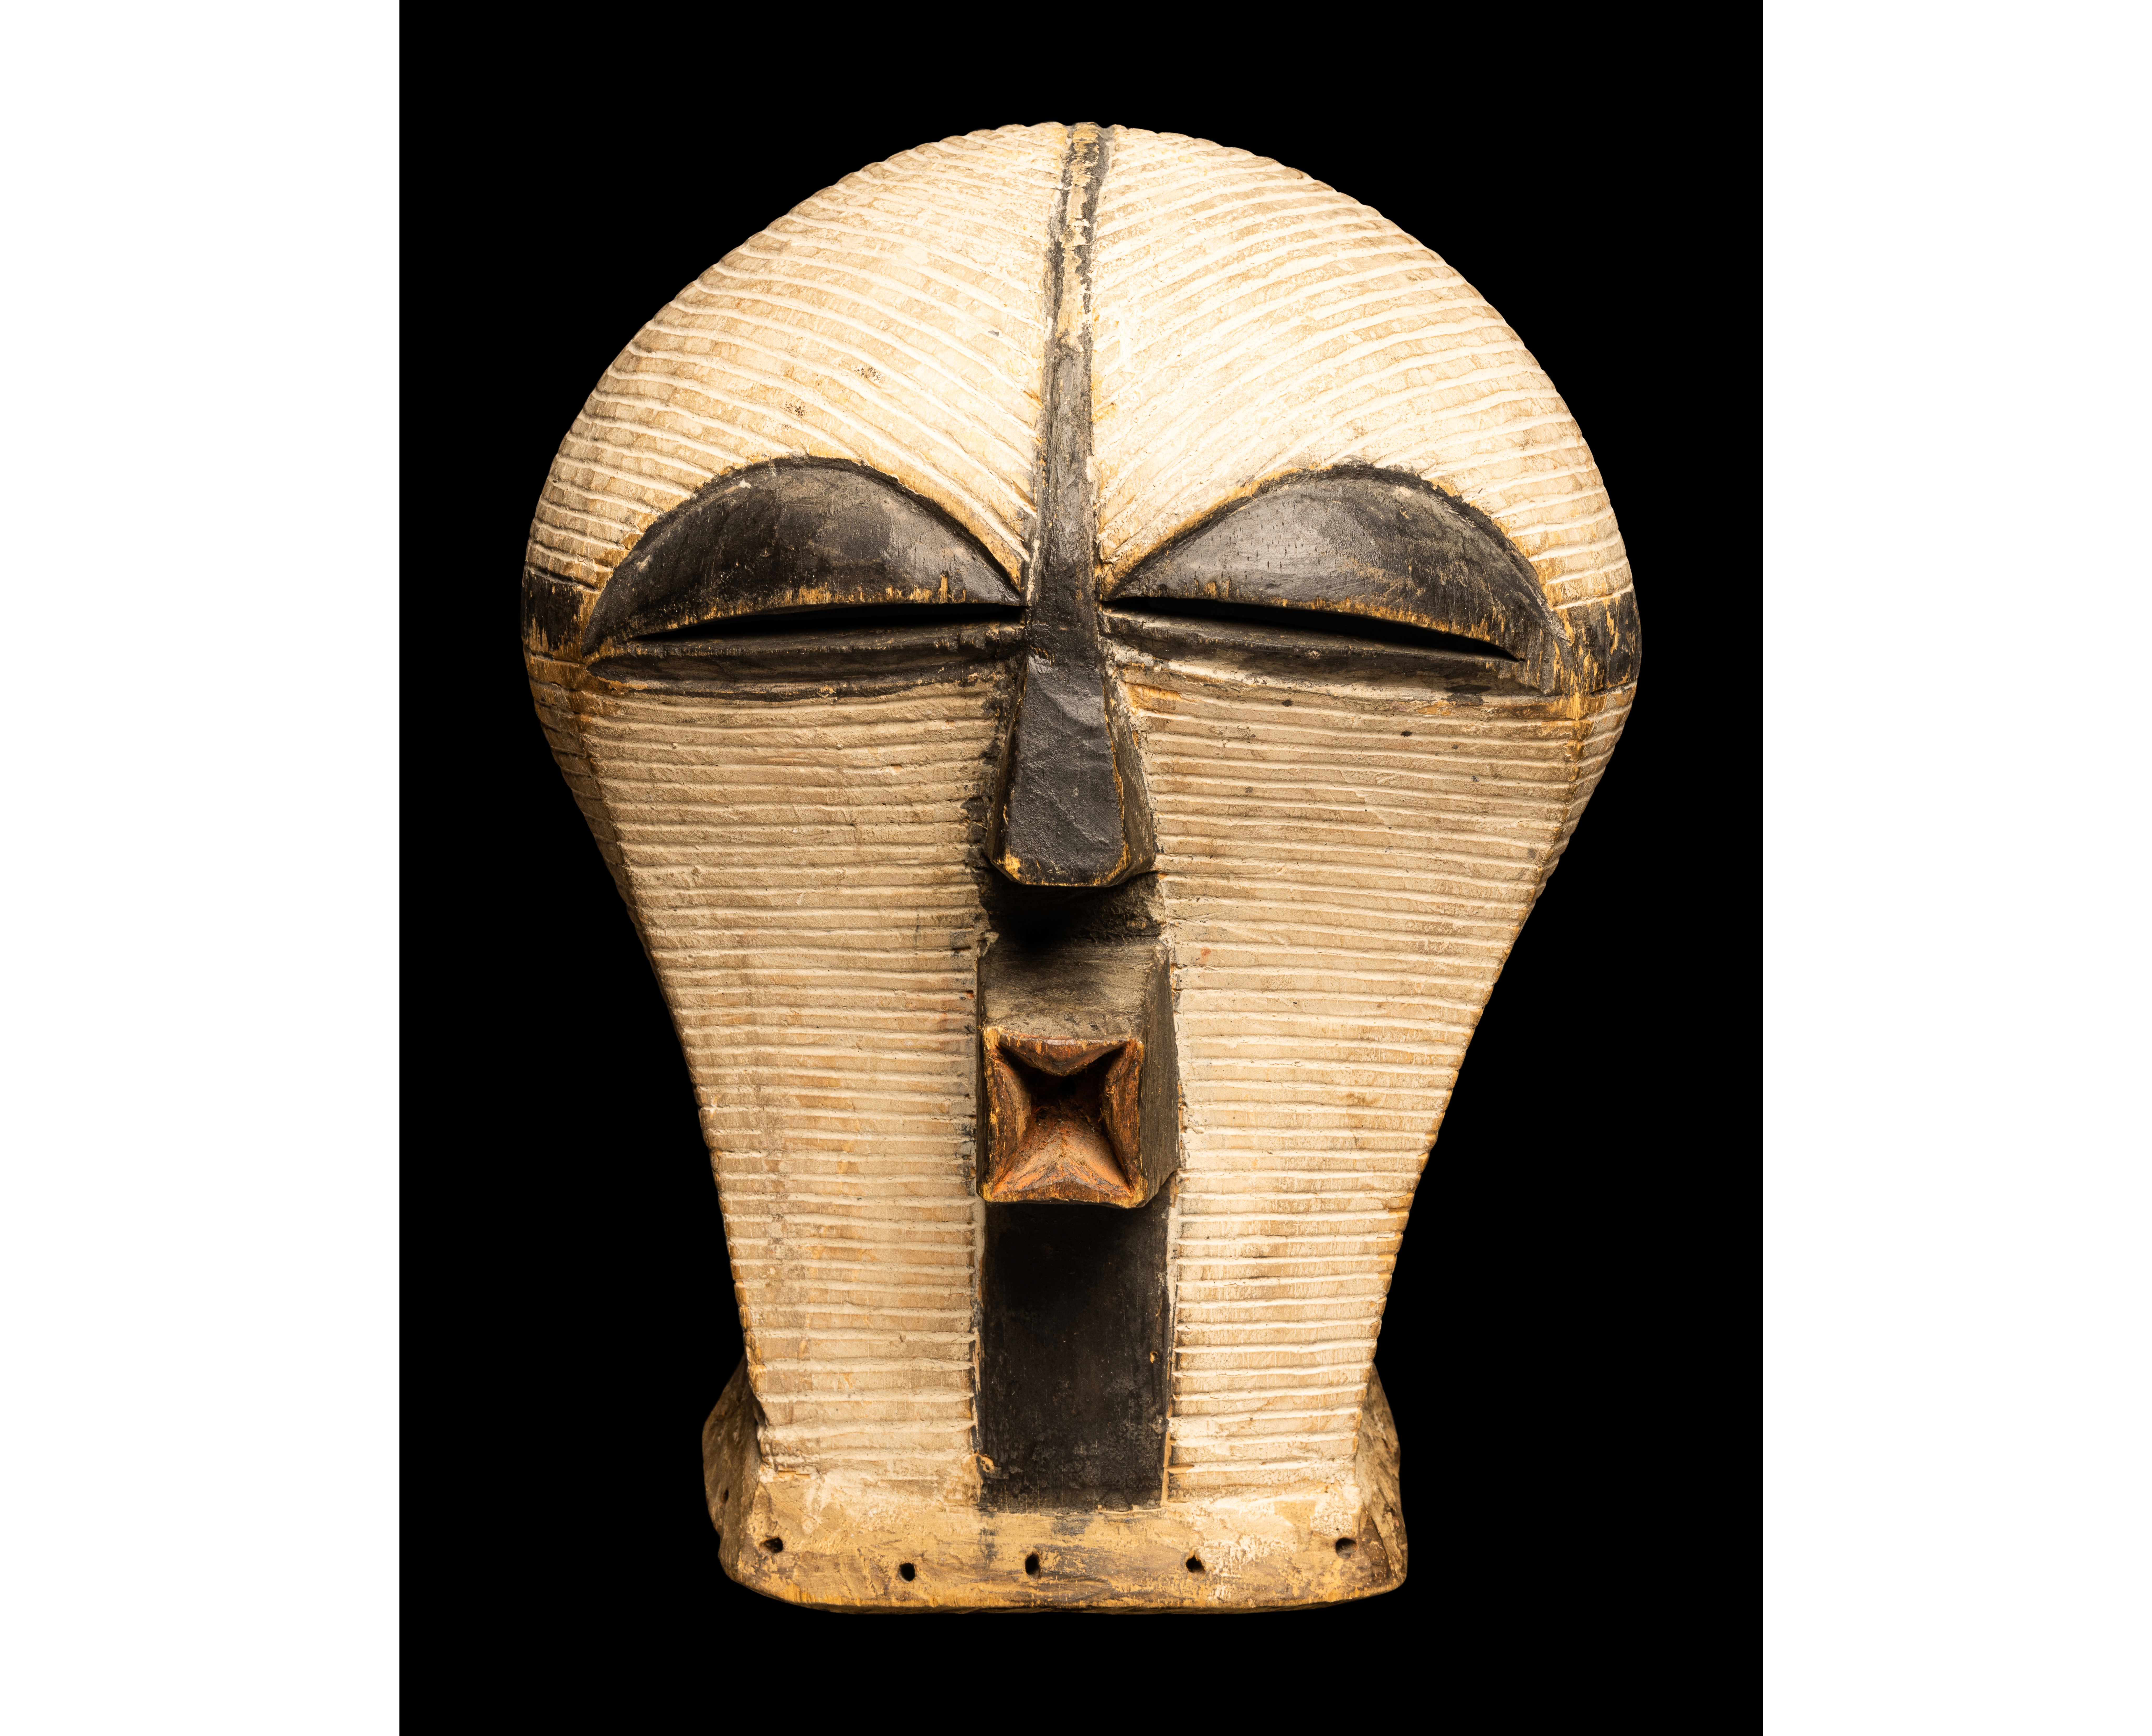 Songye wood female mask (Kifwebe), est. $4,000-$6,000